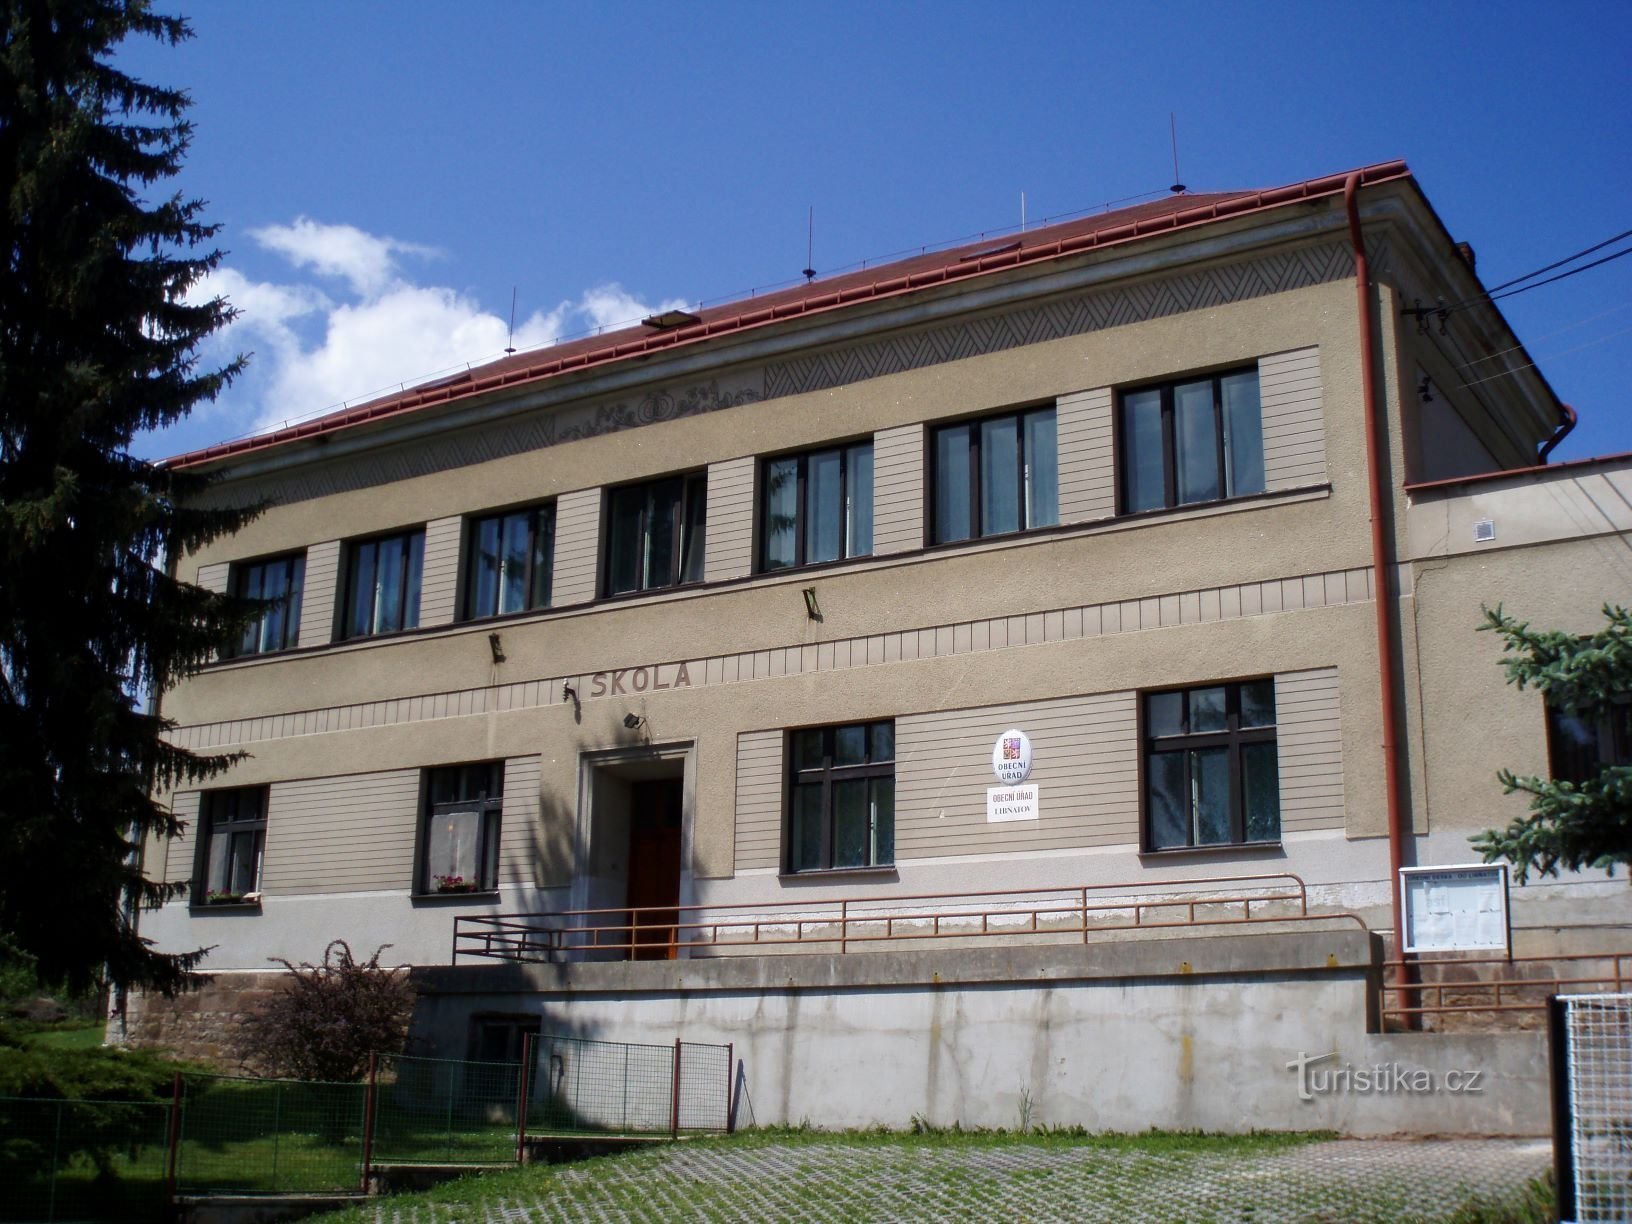 El aspecto original de la oficina municipal actual (Libňatov, 12.5.2009/XNUMX/XNUMX)